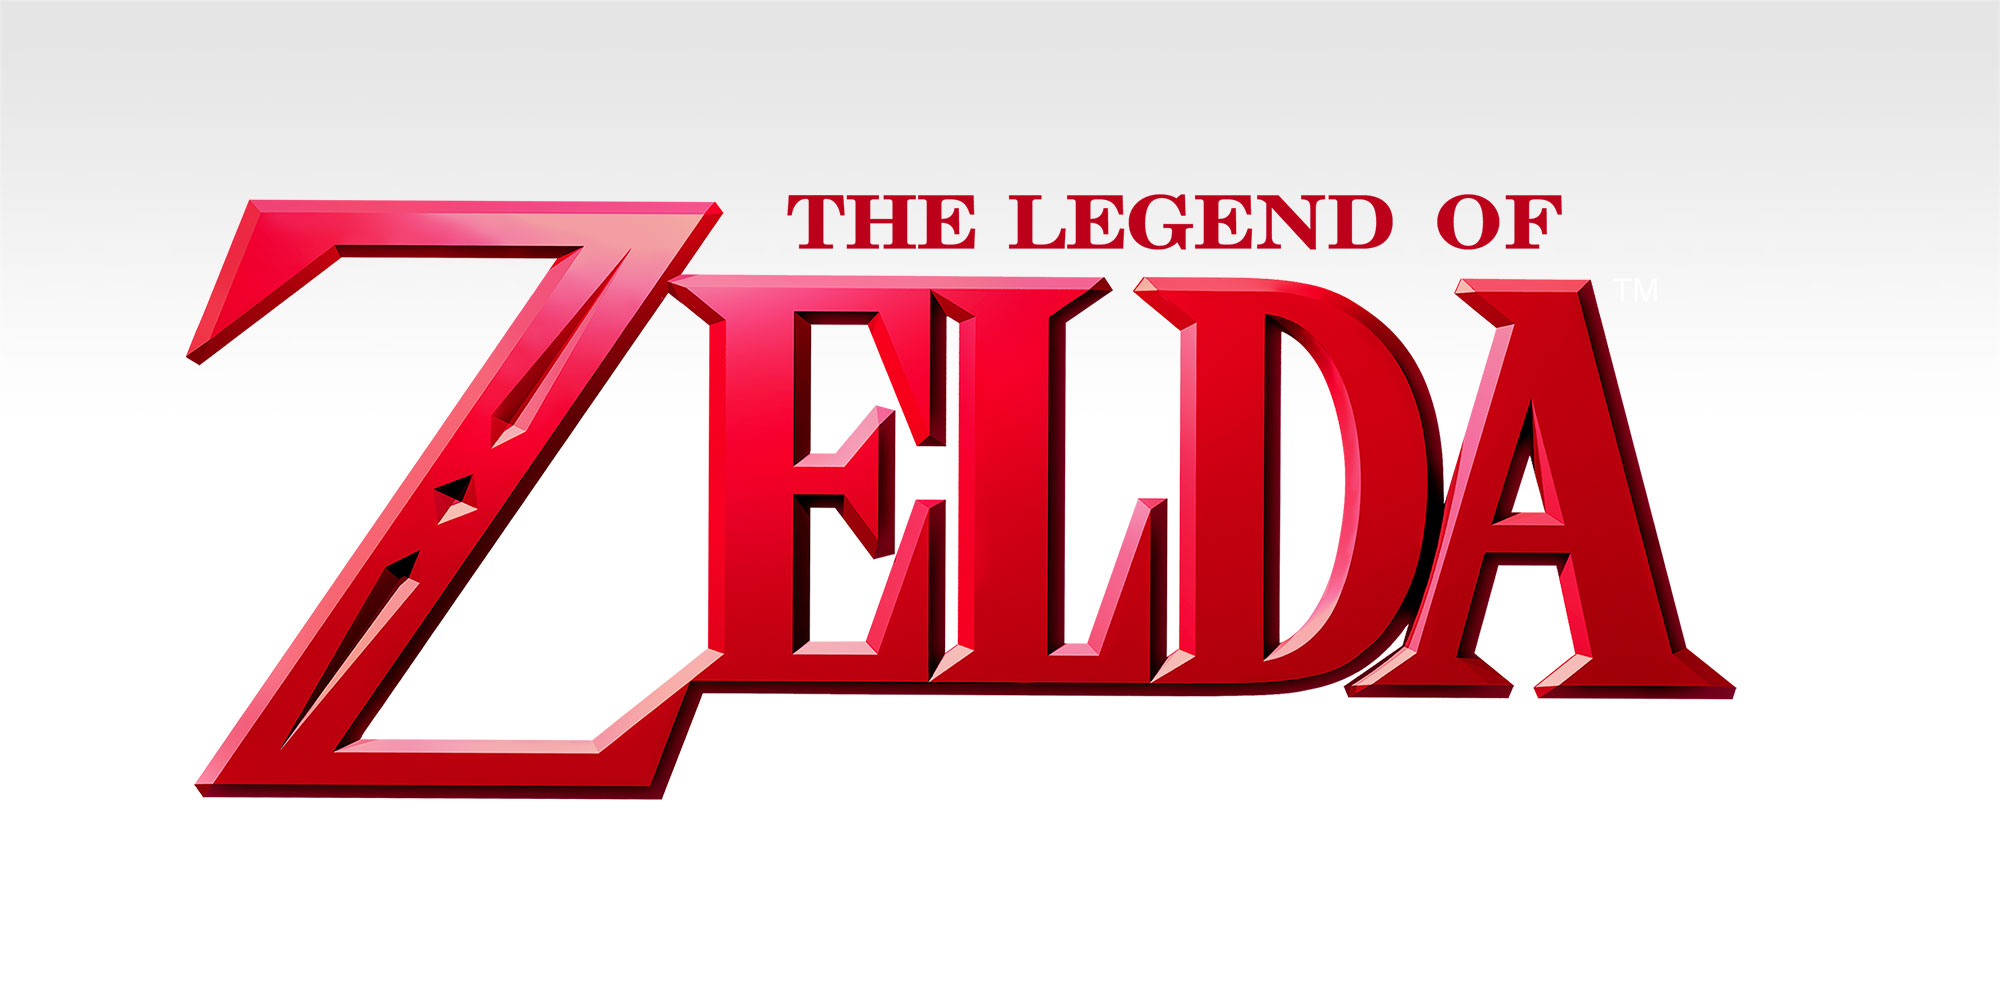 Bekijk de originele ontwerpen van The Legend of Zelda!